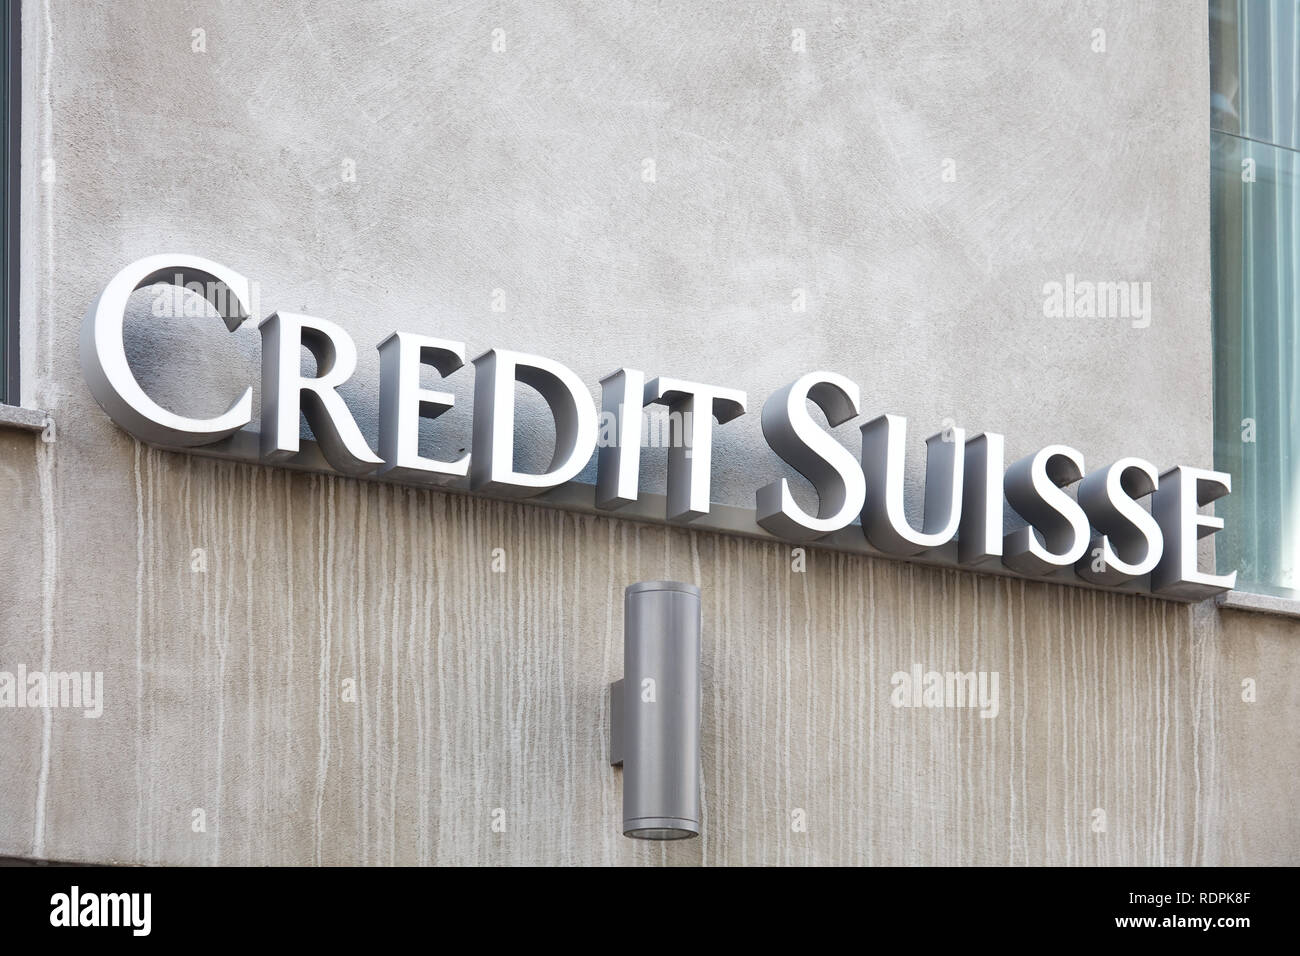 SANKT MORITZ, SWITZERLAND - AUGUST 16, 2018: Credit Suisse, swiss bank sign in Sankt Moritz, Switzerland Stock Photo